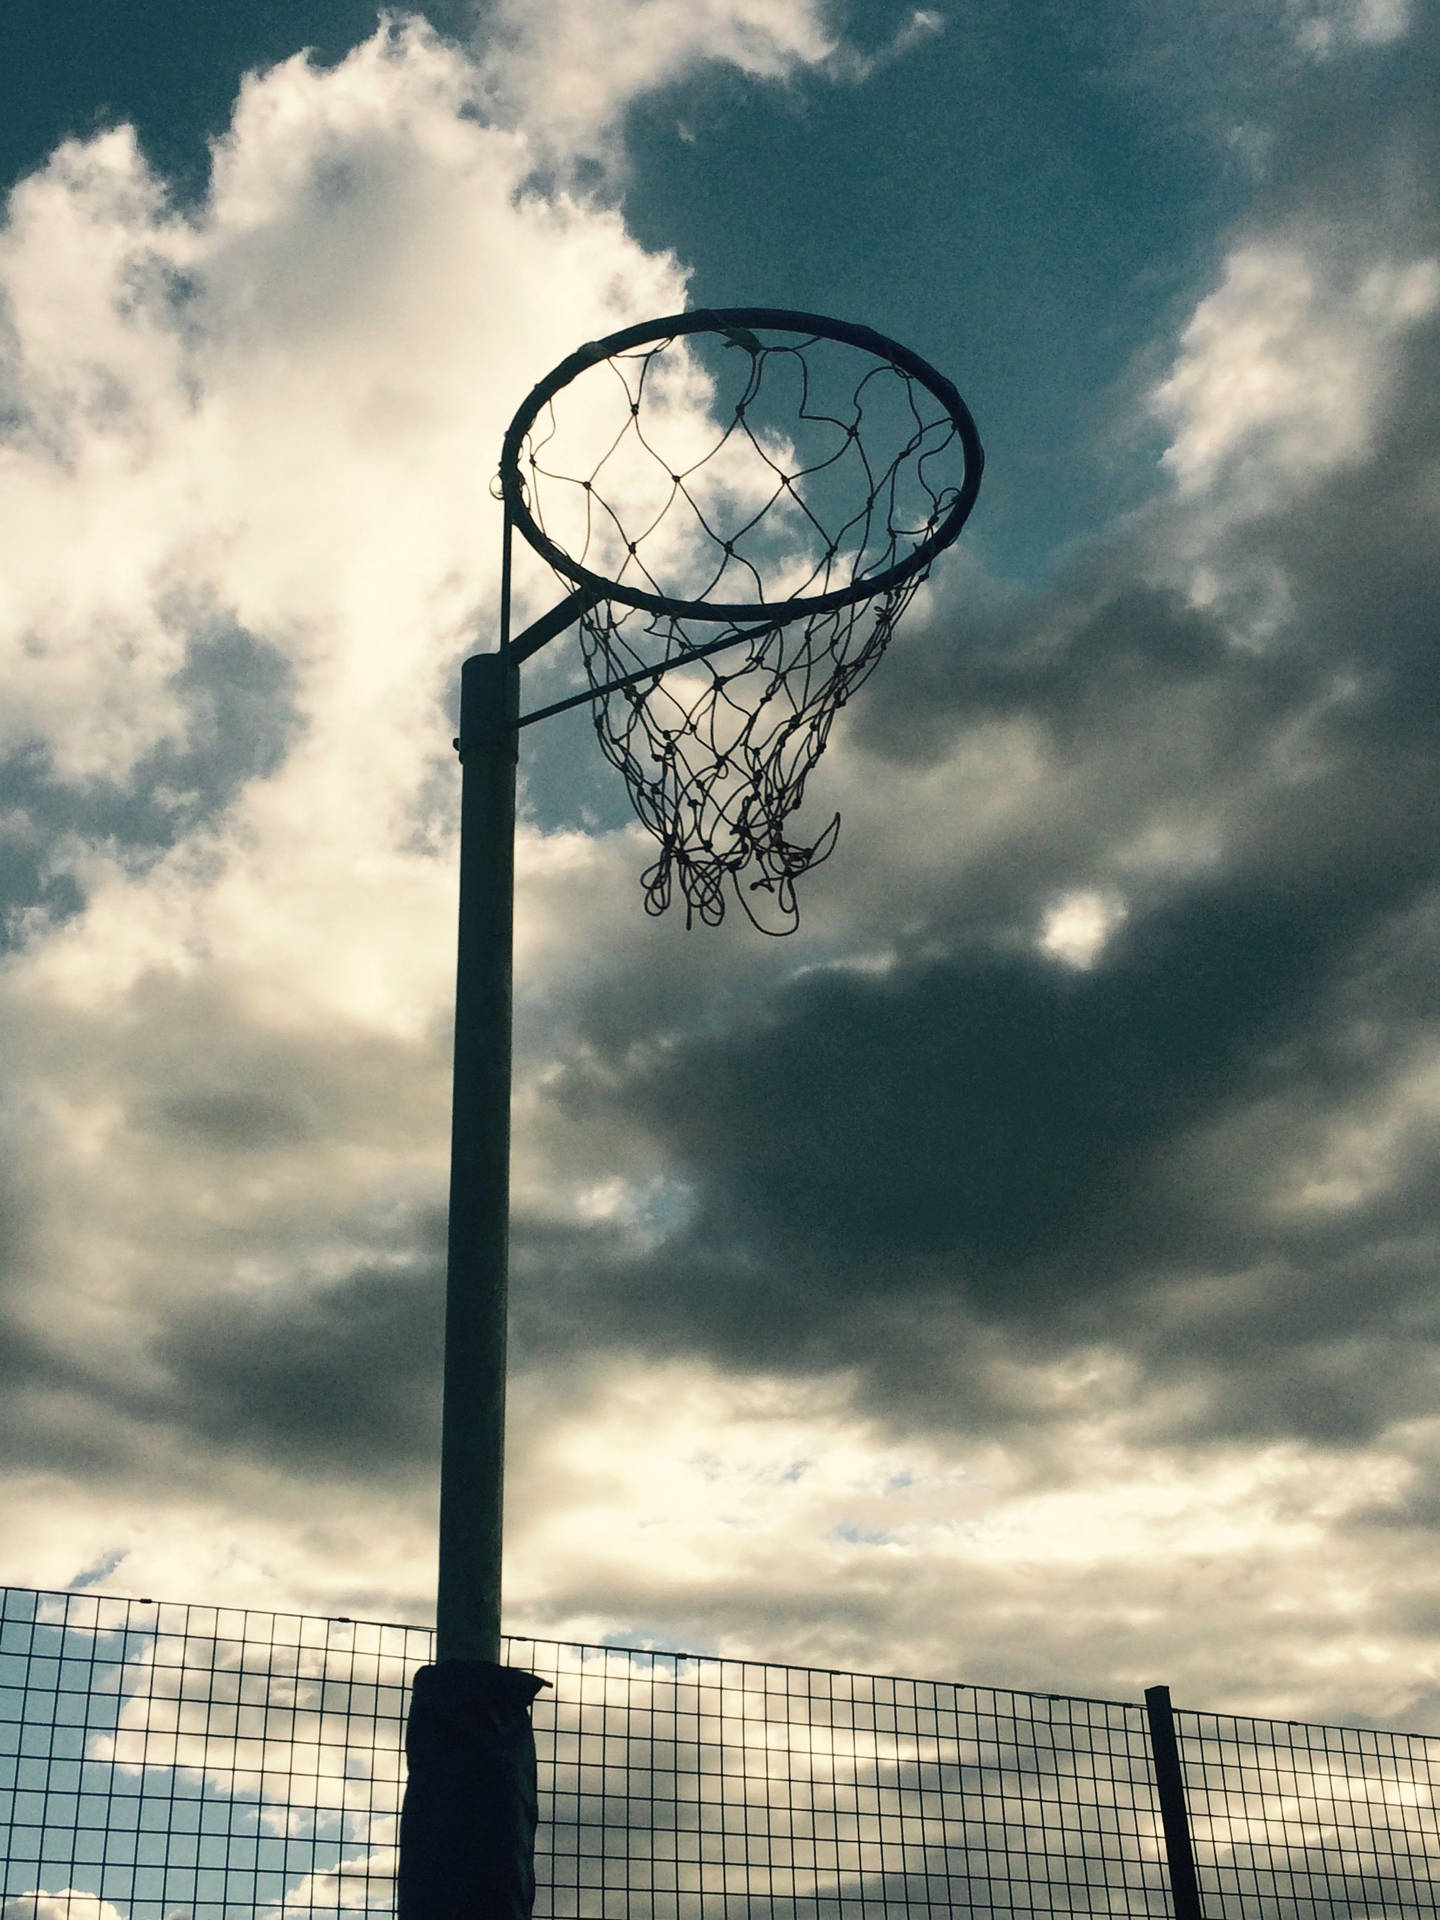 En udendørs basketballbane ringe sig på baggrunden. Wallpaper